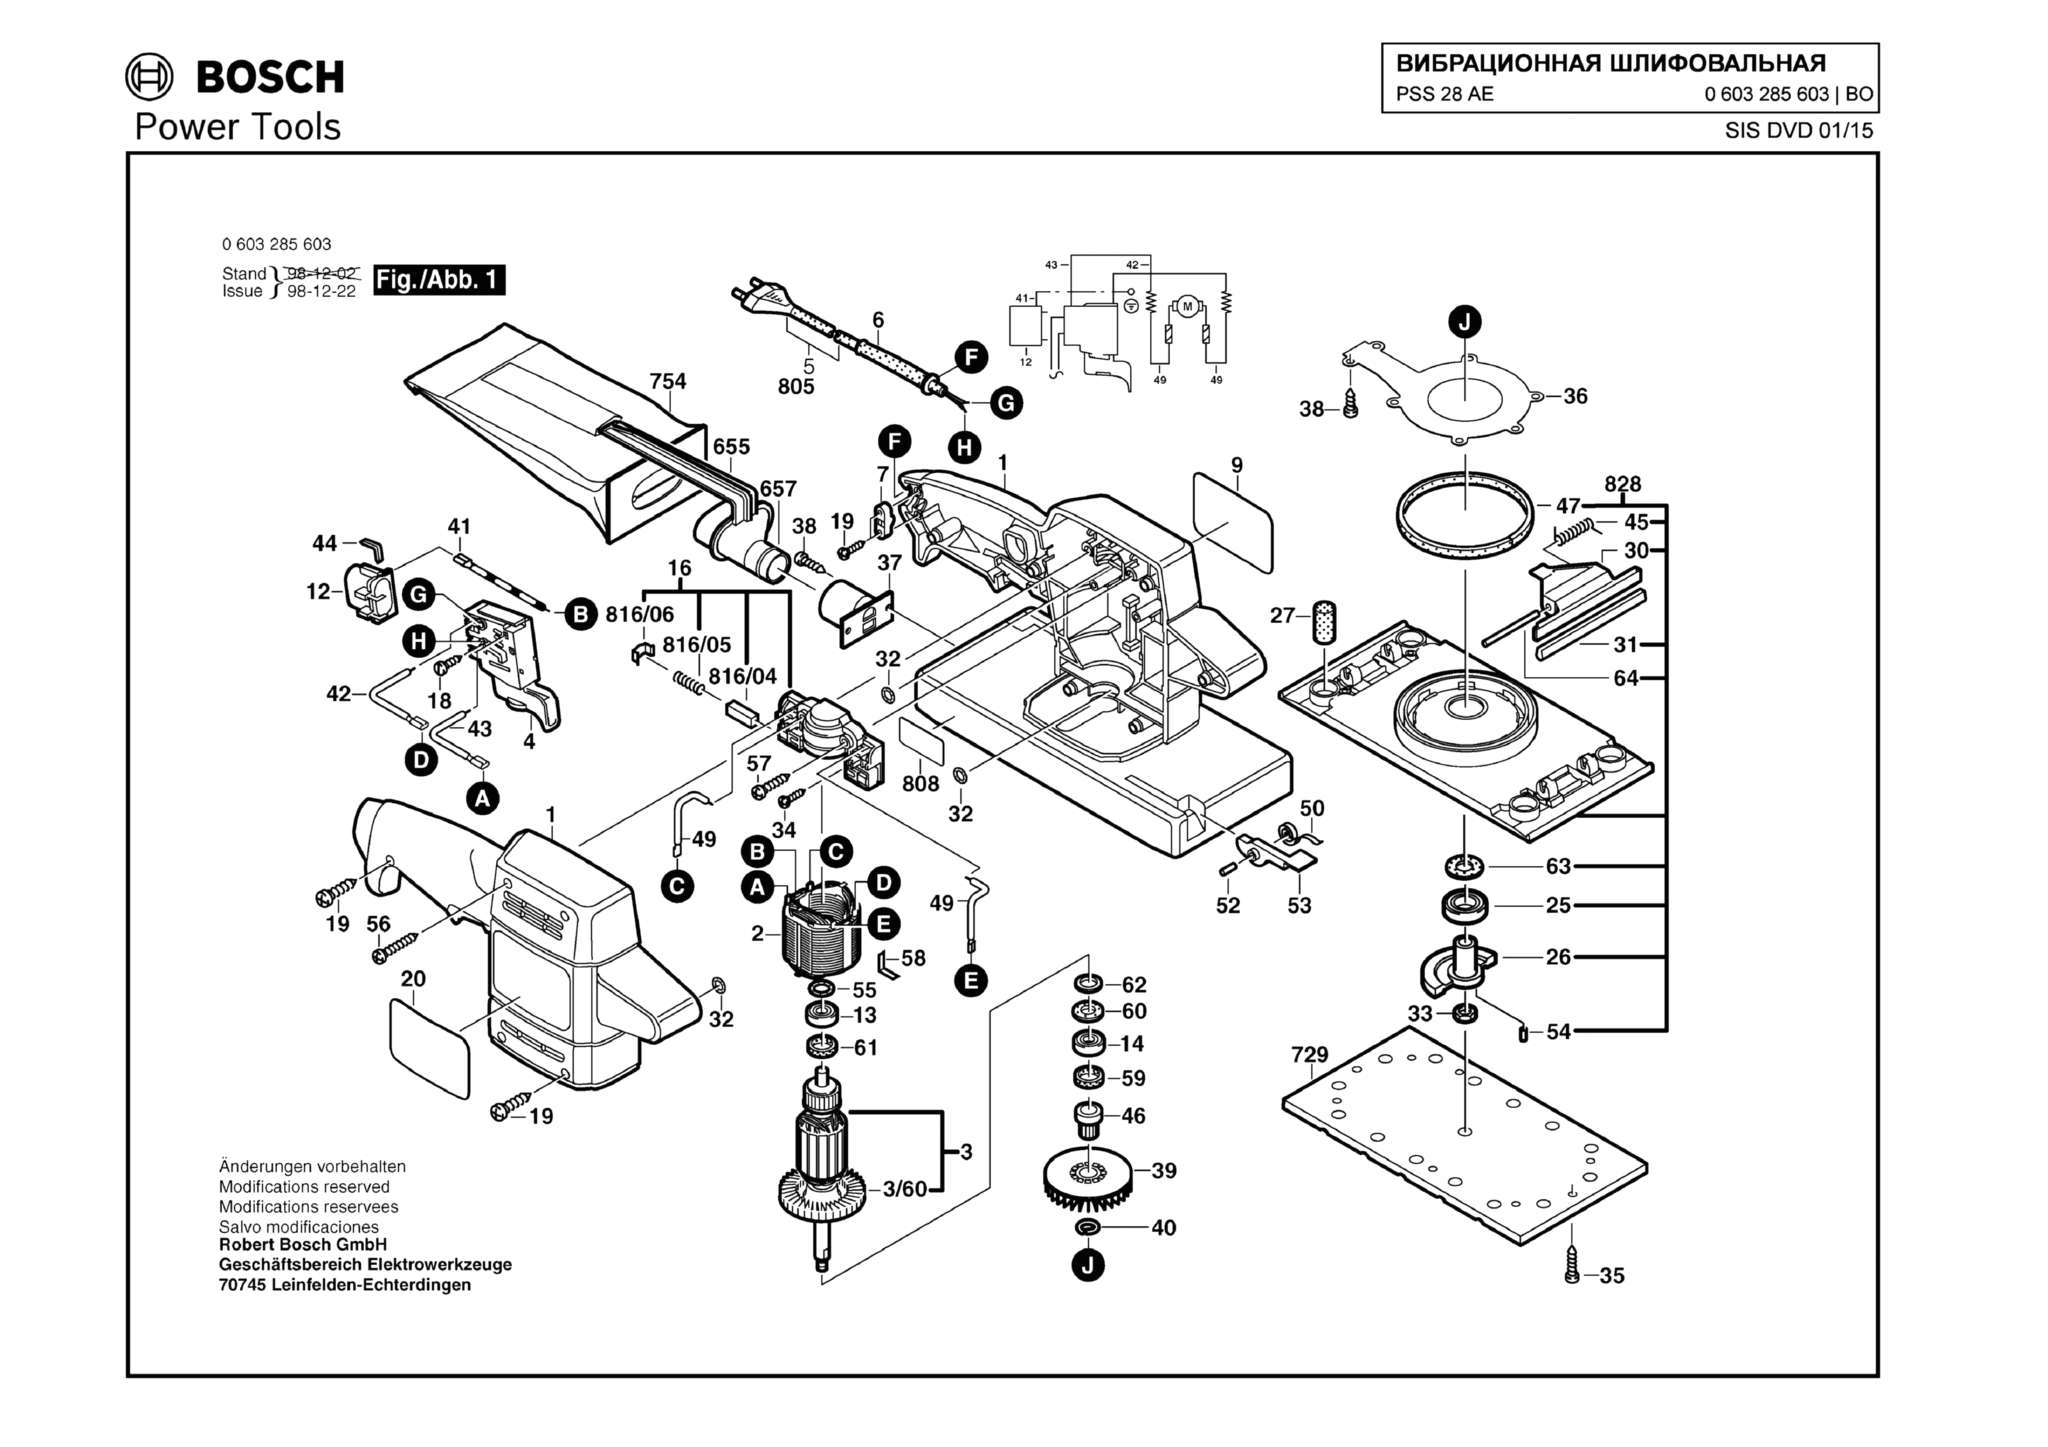 Запчасти, схема и деталировка Bosch PSS 28 AE (ТИП 0603285603)